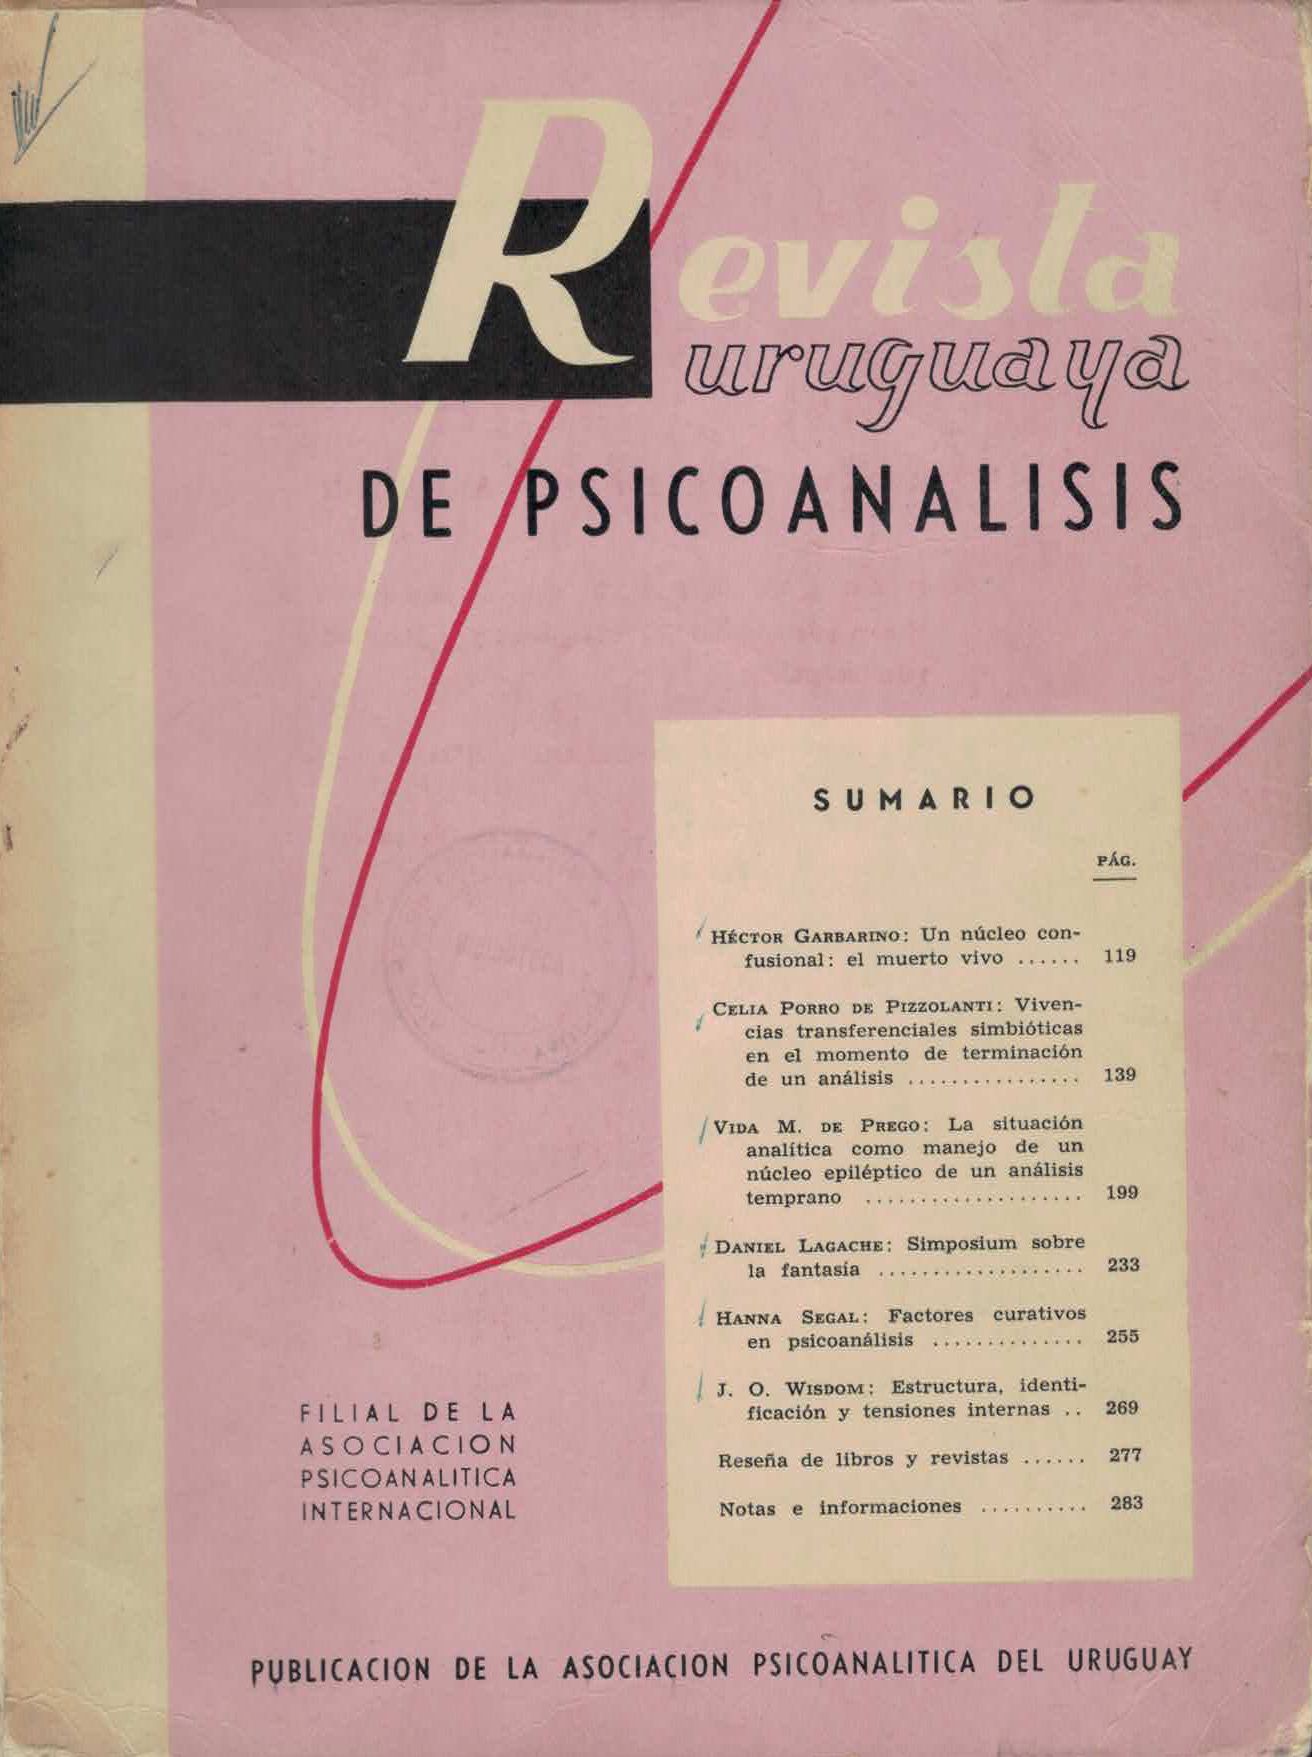 					View Vol. 7 No. 2-3 (1965): Revista Uruguaya de Psicoanálisis
				